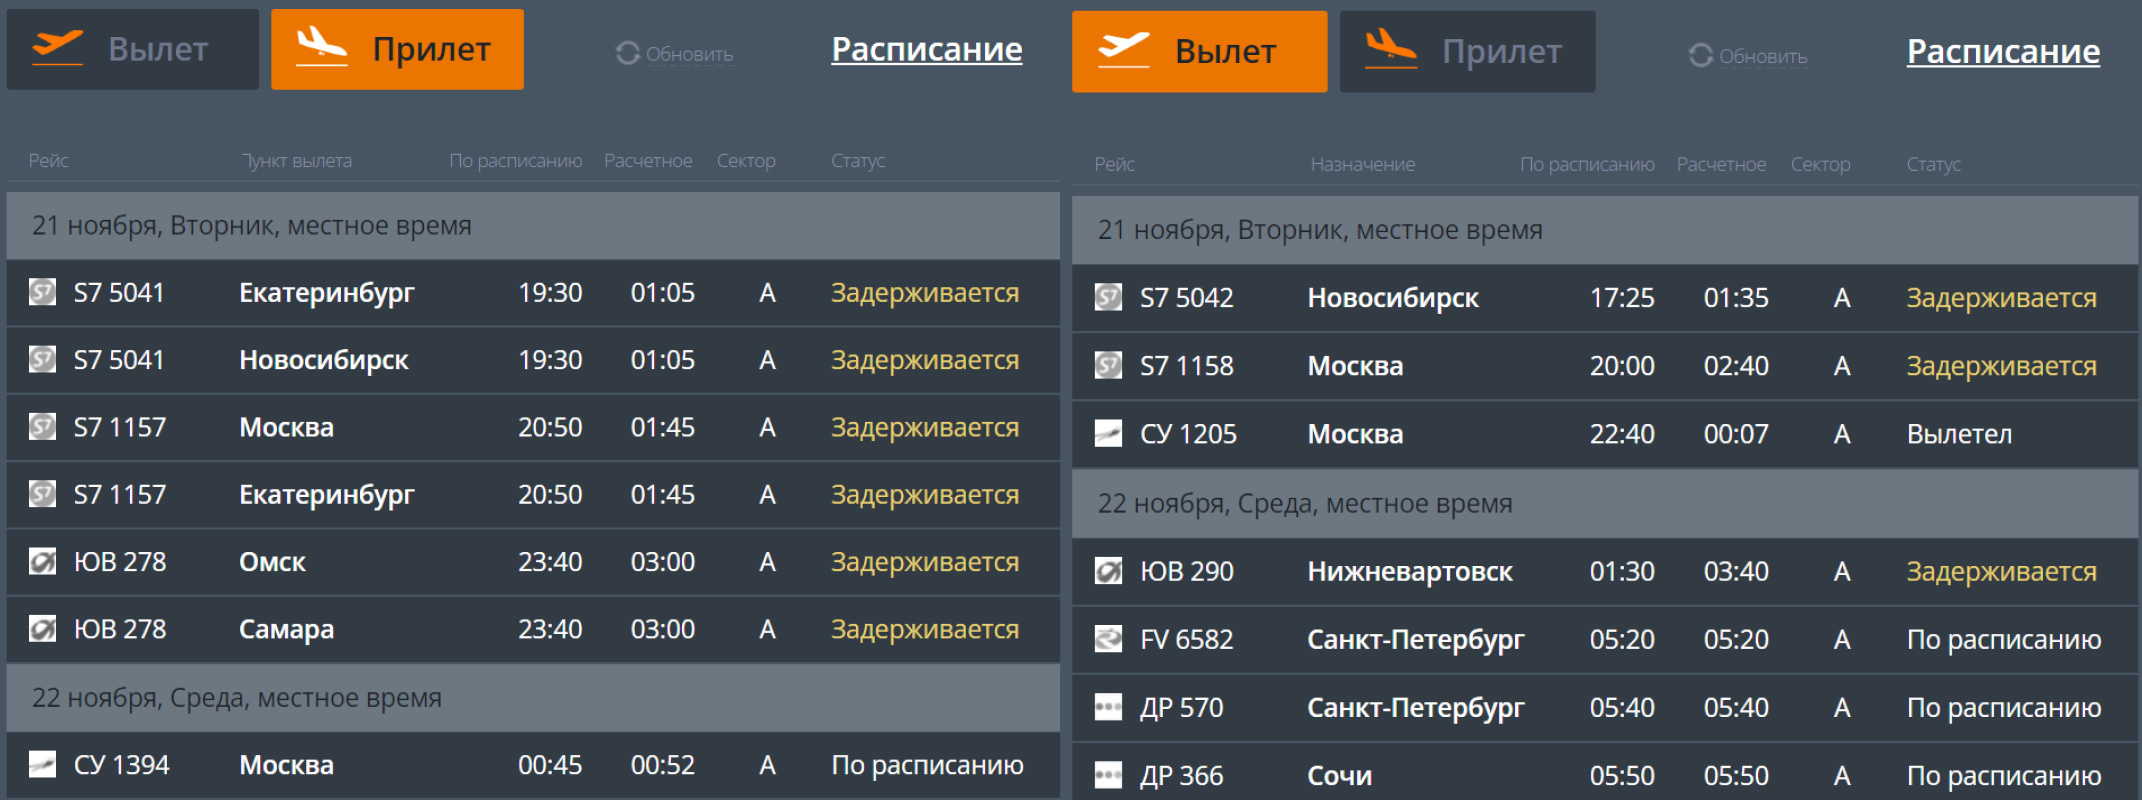 Так сейчас выглядит онлайн-табло пермского аэропорта